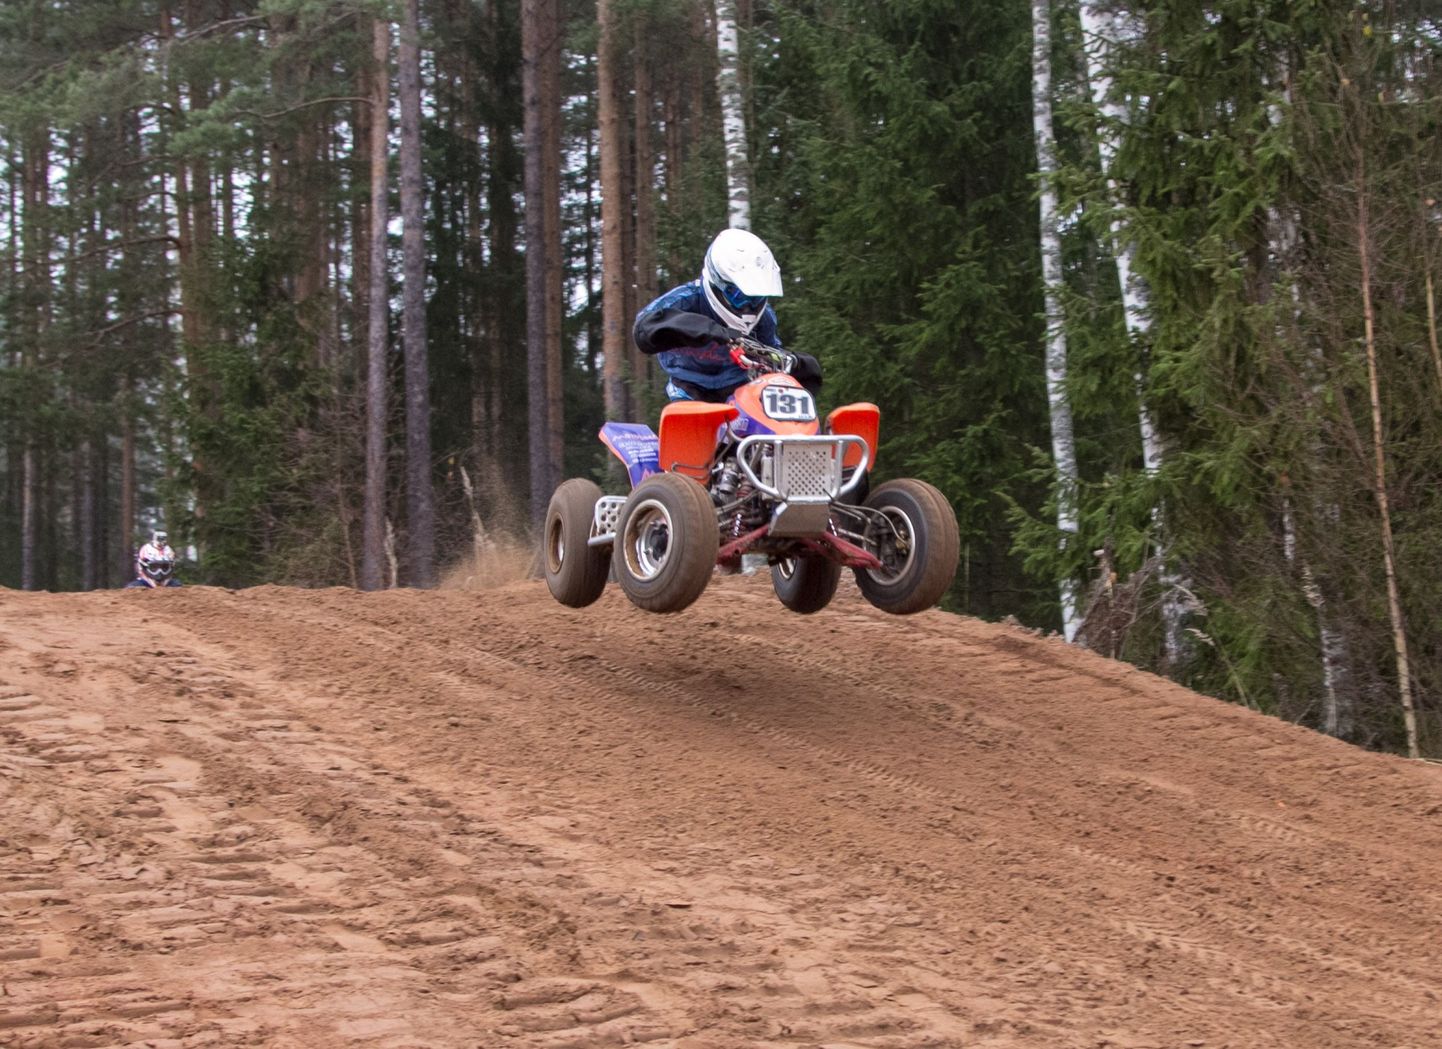 Rosma krossirajal saavutas klubi K&K noor motosportlane Mihkel Salujõe Q100 masinaklassis igati tubli neljanda koha.